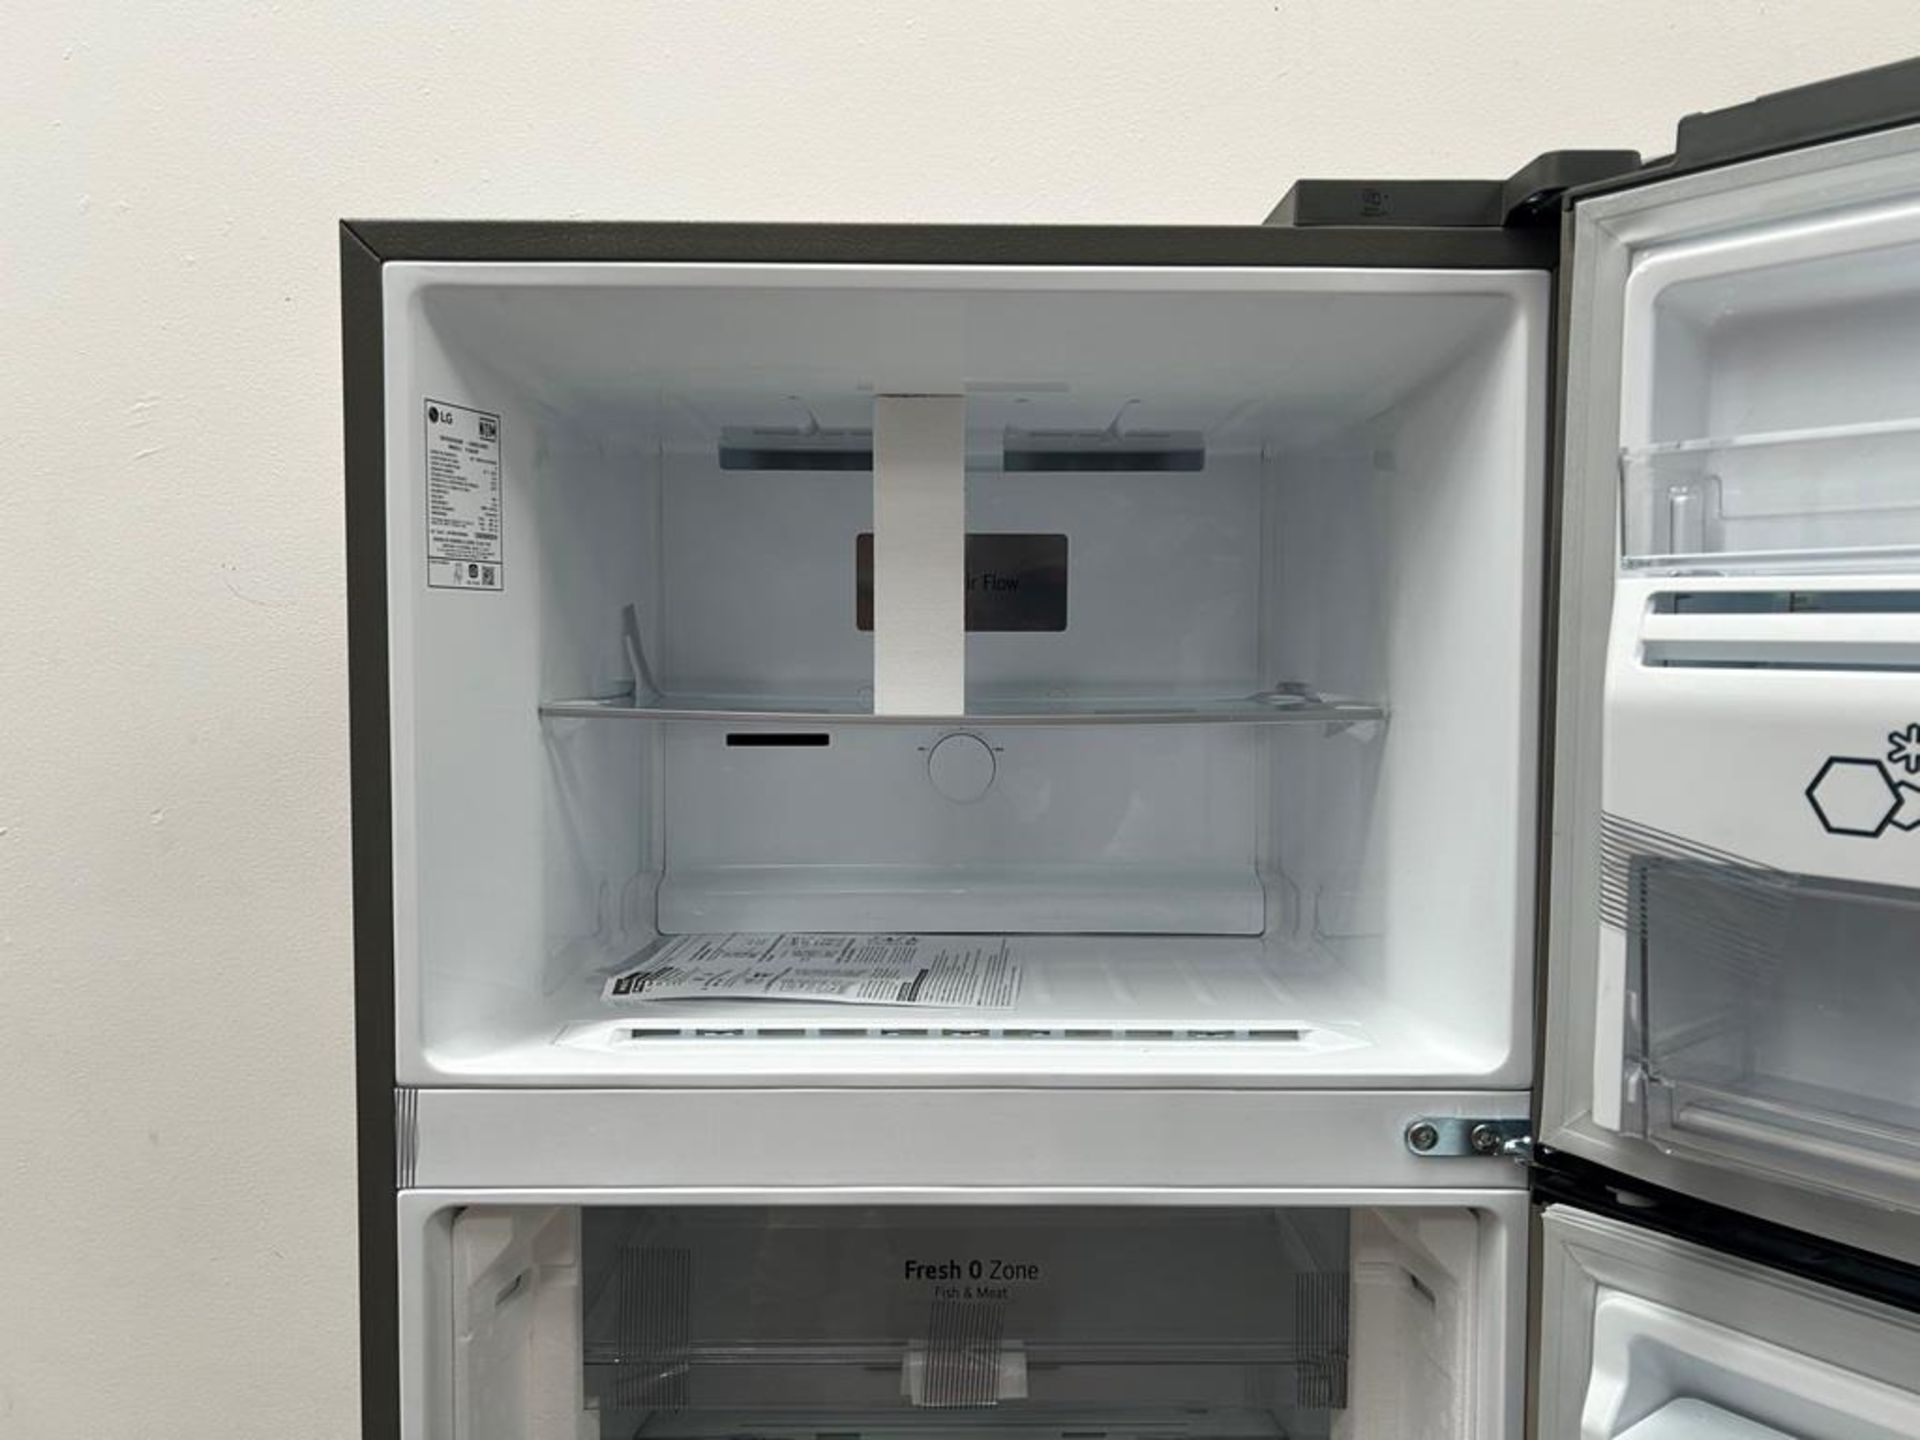 (NUEVO) Refrigerador con dispensador de agua Marca LG, Modelo VT40AWP, Serie 48304, Color GRIS - Image 5 of 11